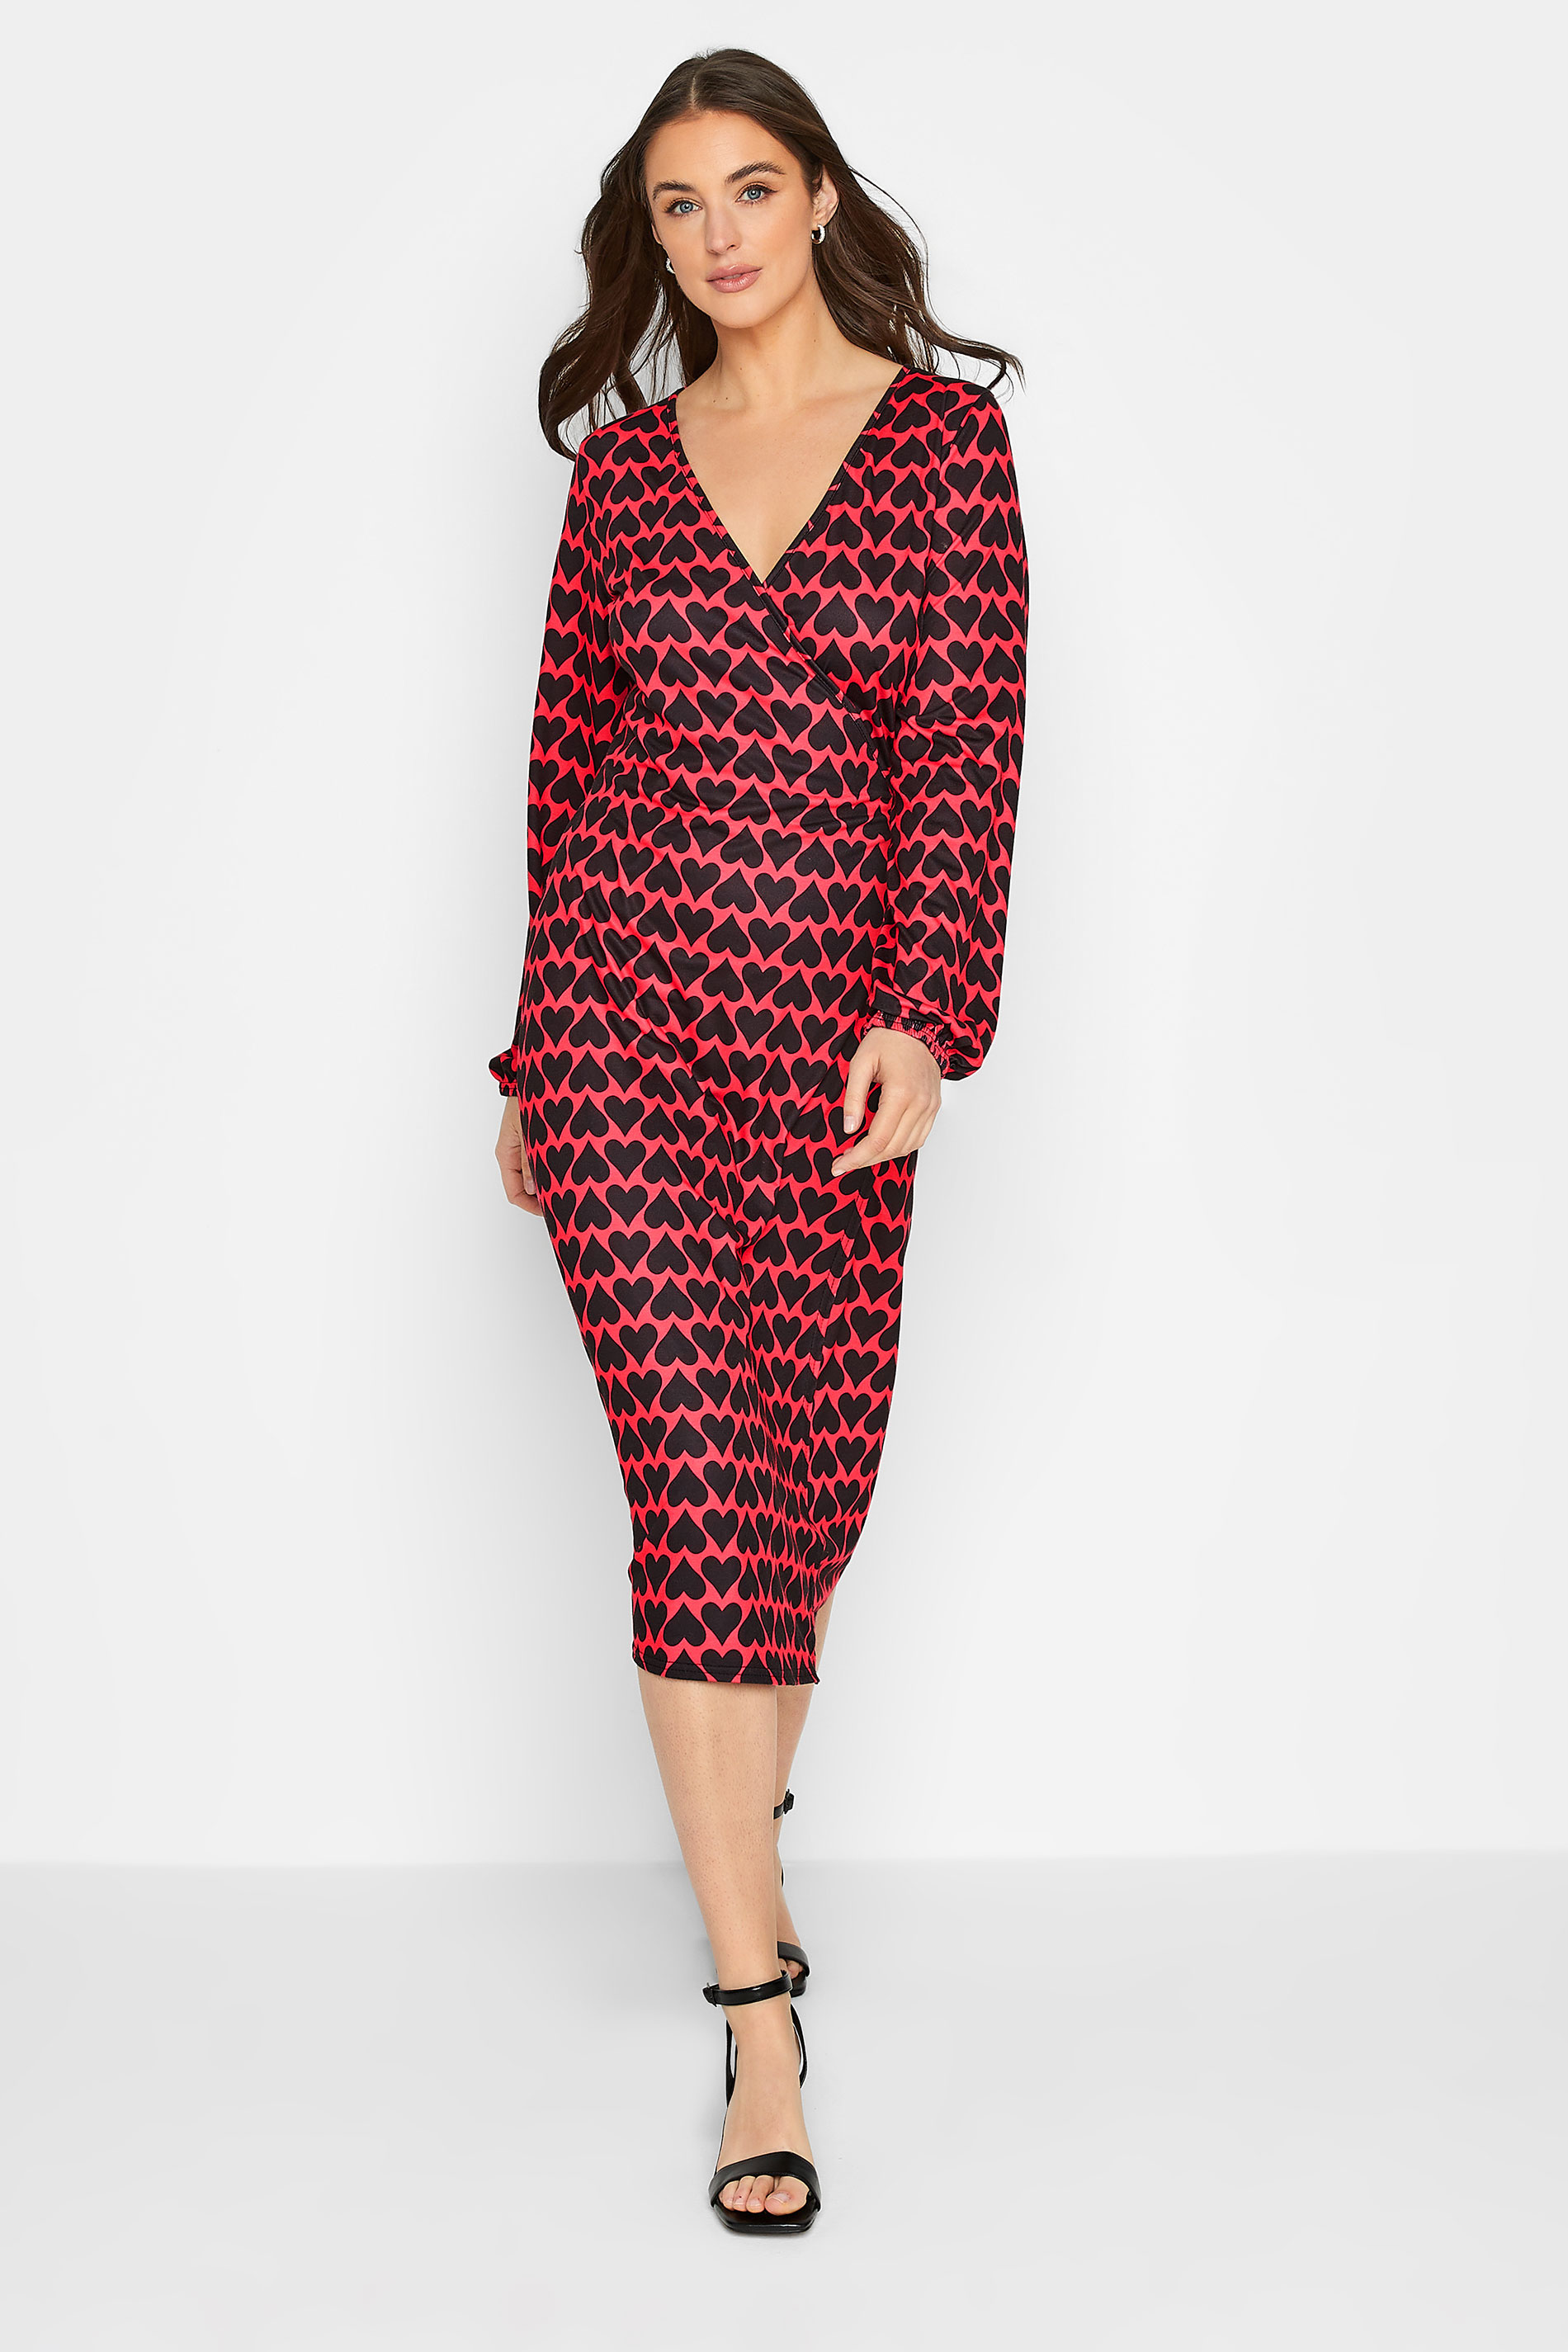 LTS Tall Red & Black Heart Print Midi Wrap Dress | Long Tall Sally  1